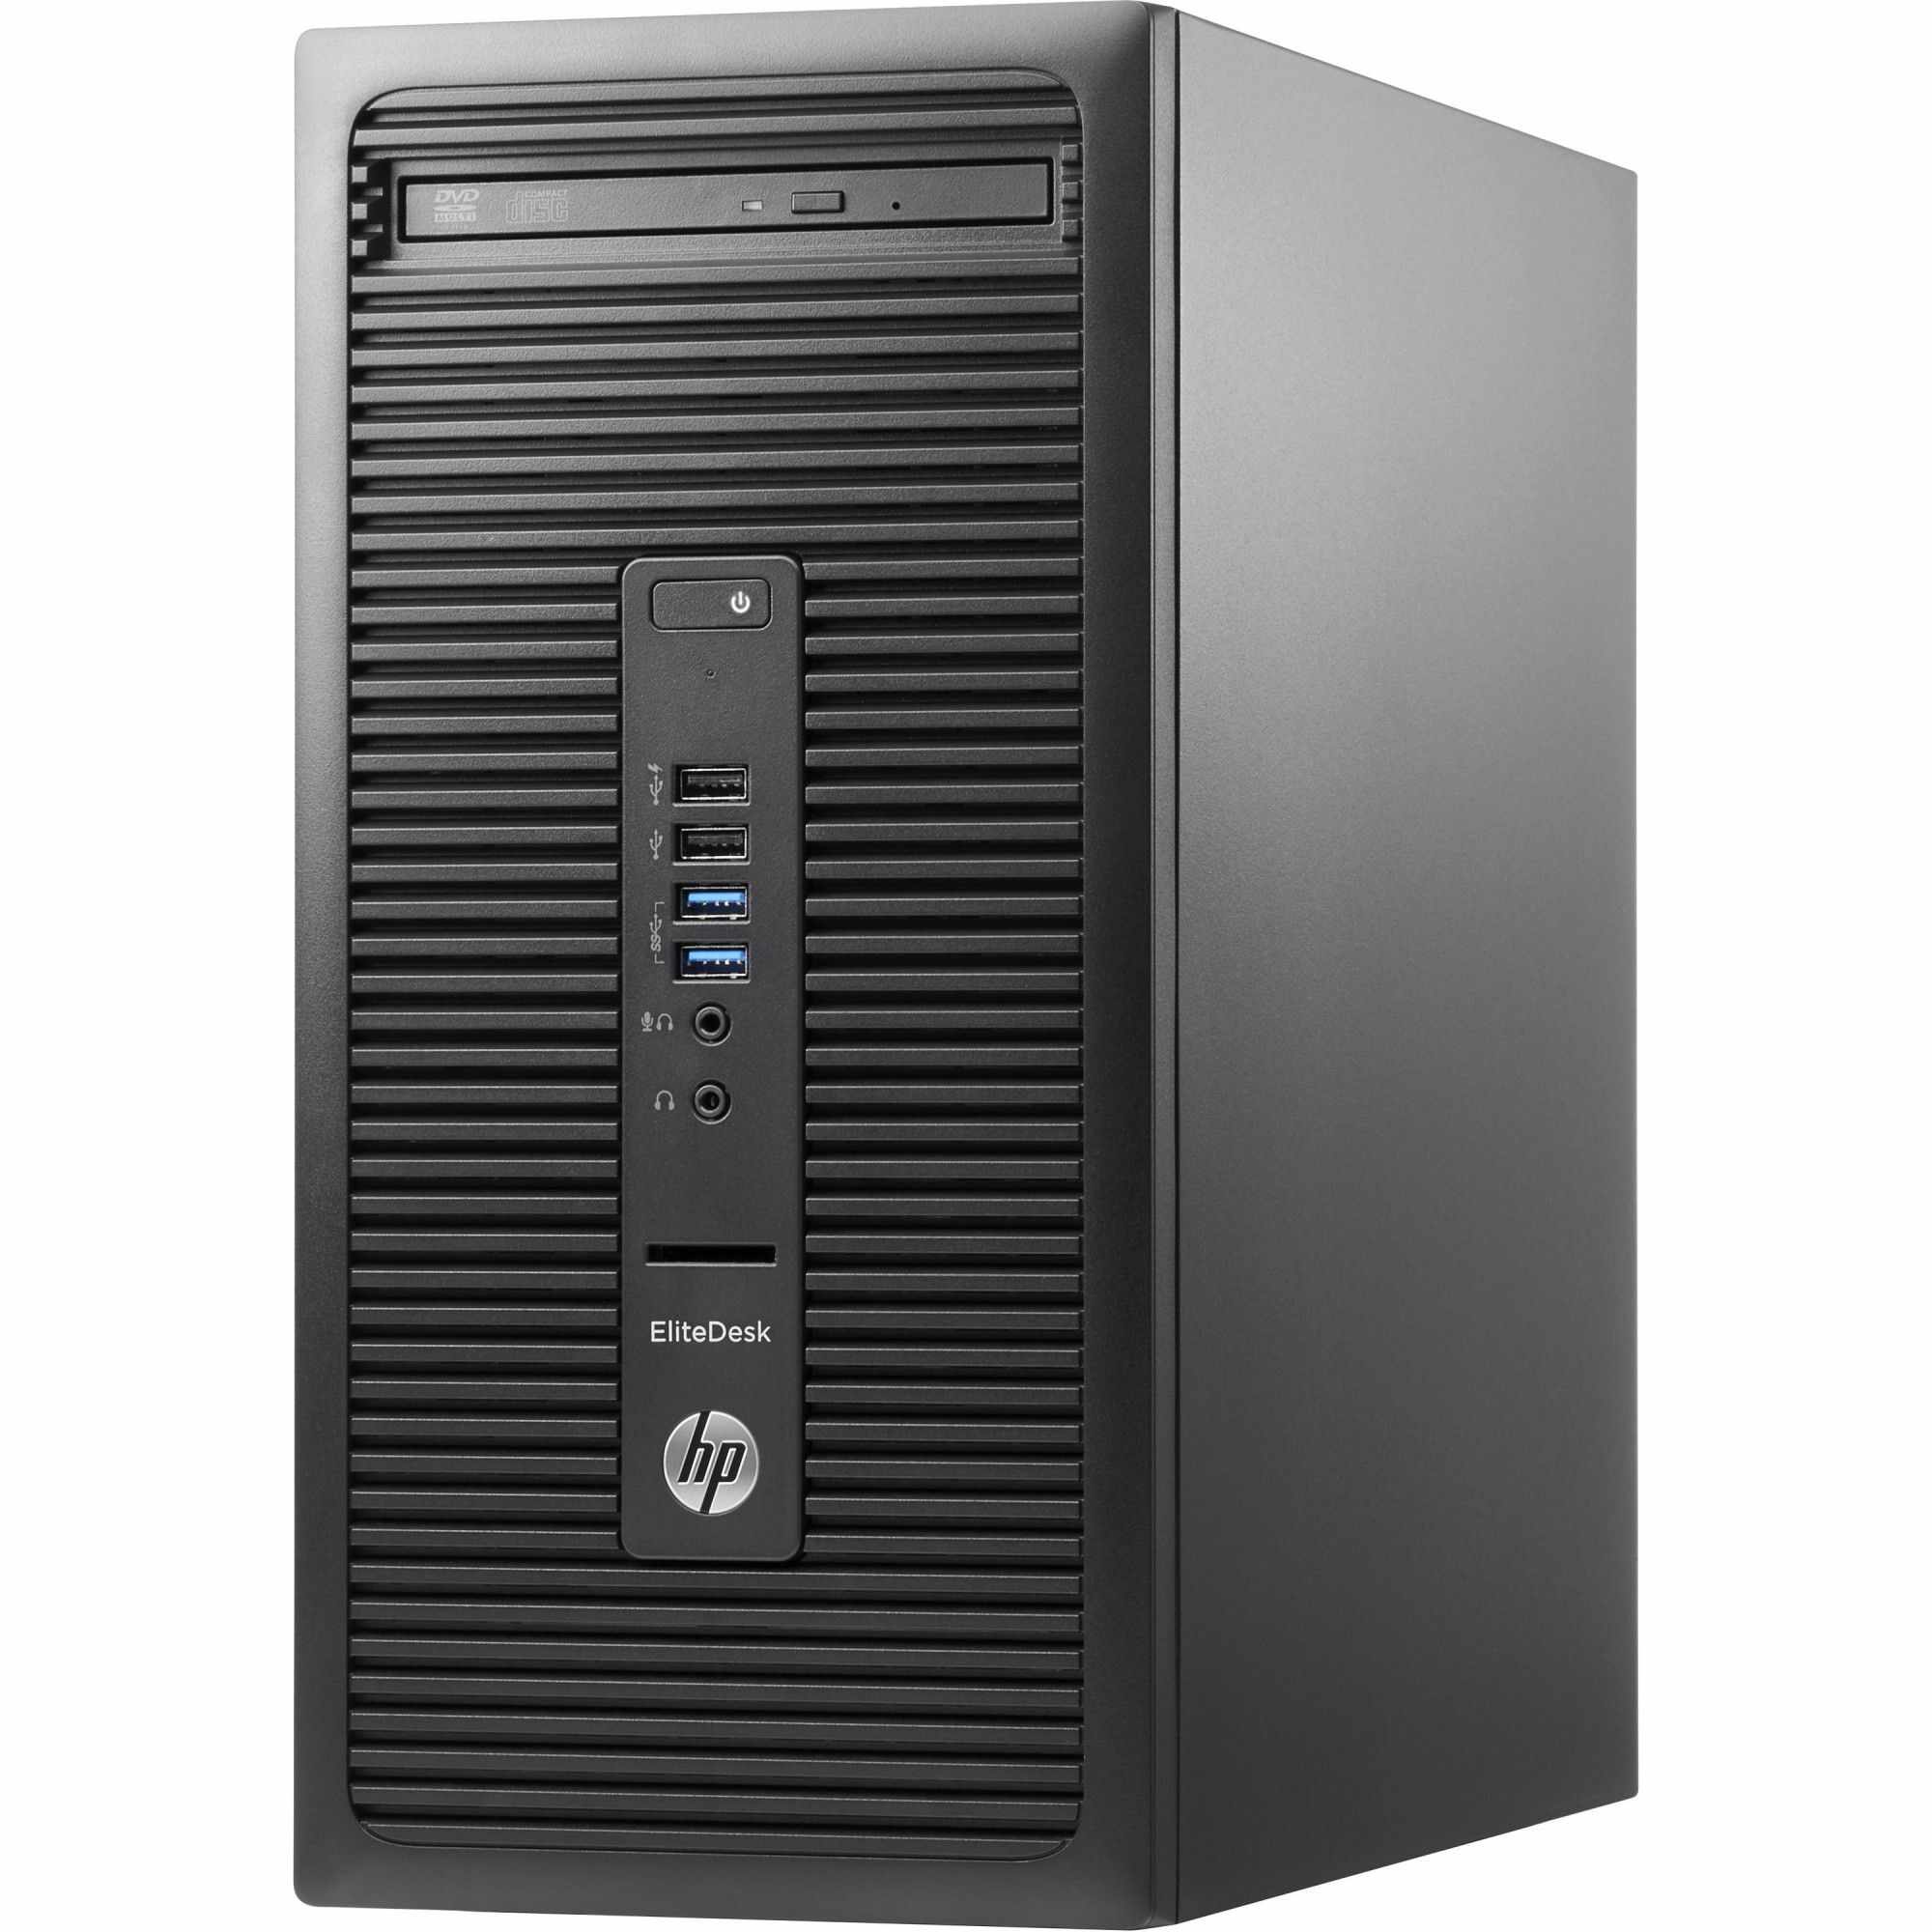 Sistem Desktop PC HP EliteDesk 705 G2 MT, AMD A10-8750B, 8GB DDR3, HDD 2TB, nVIDIA GeForce GT 730 2GB, Free DOS